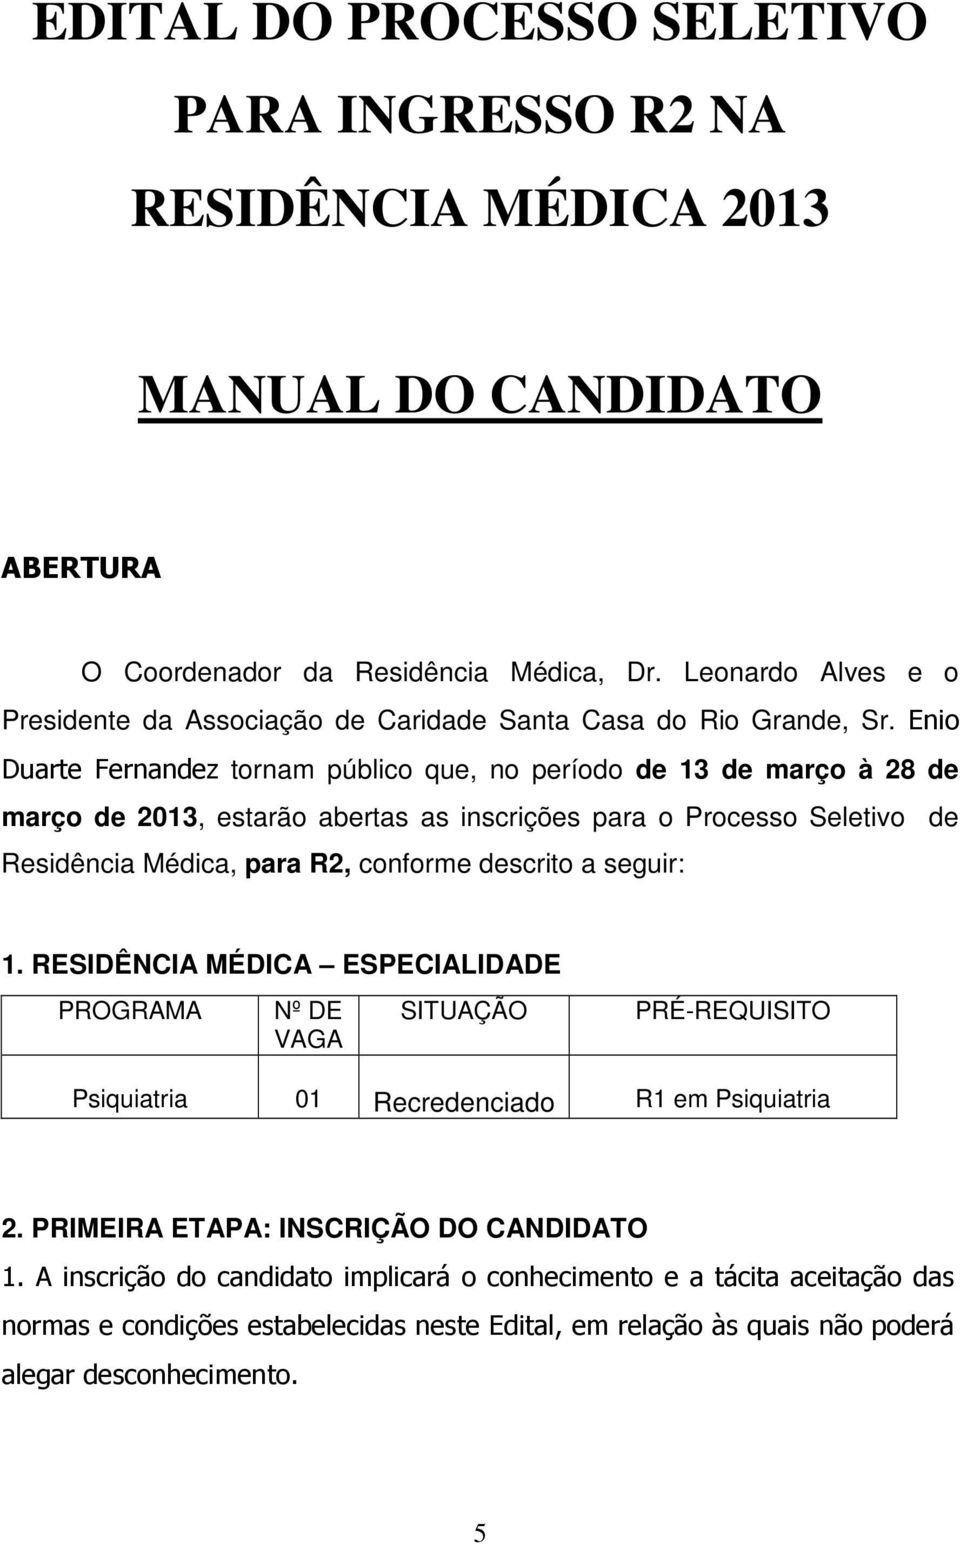 Enio Duarte Fernandez tornam público que, no período de 13 de março à 28 de março de 2013, estarão abertas as inscrições para o Processo Seletivo de Residência Médica, para R2, conforme descrito